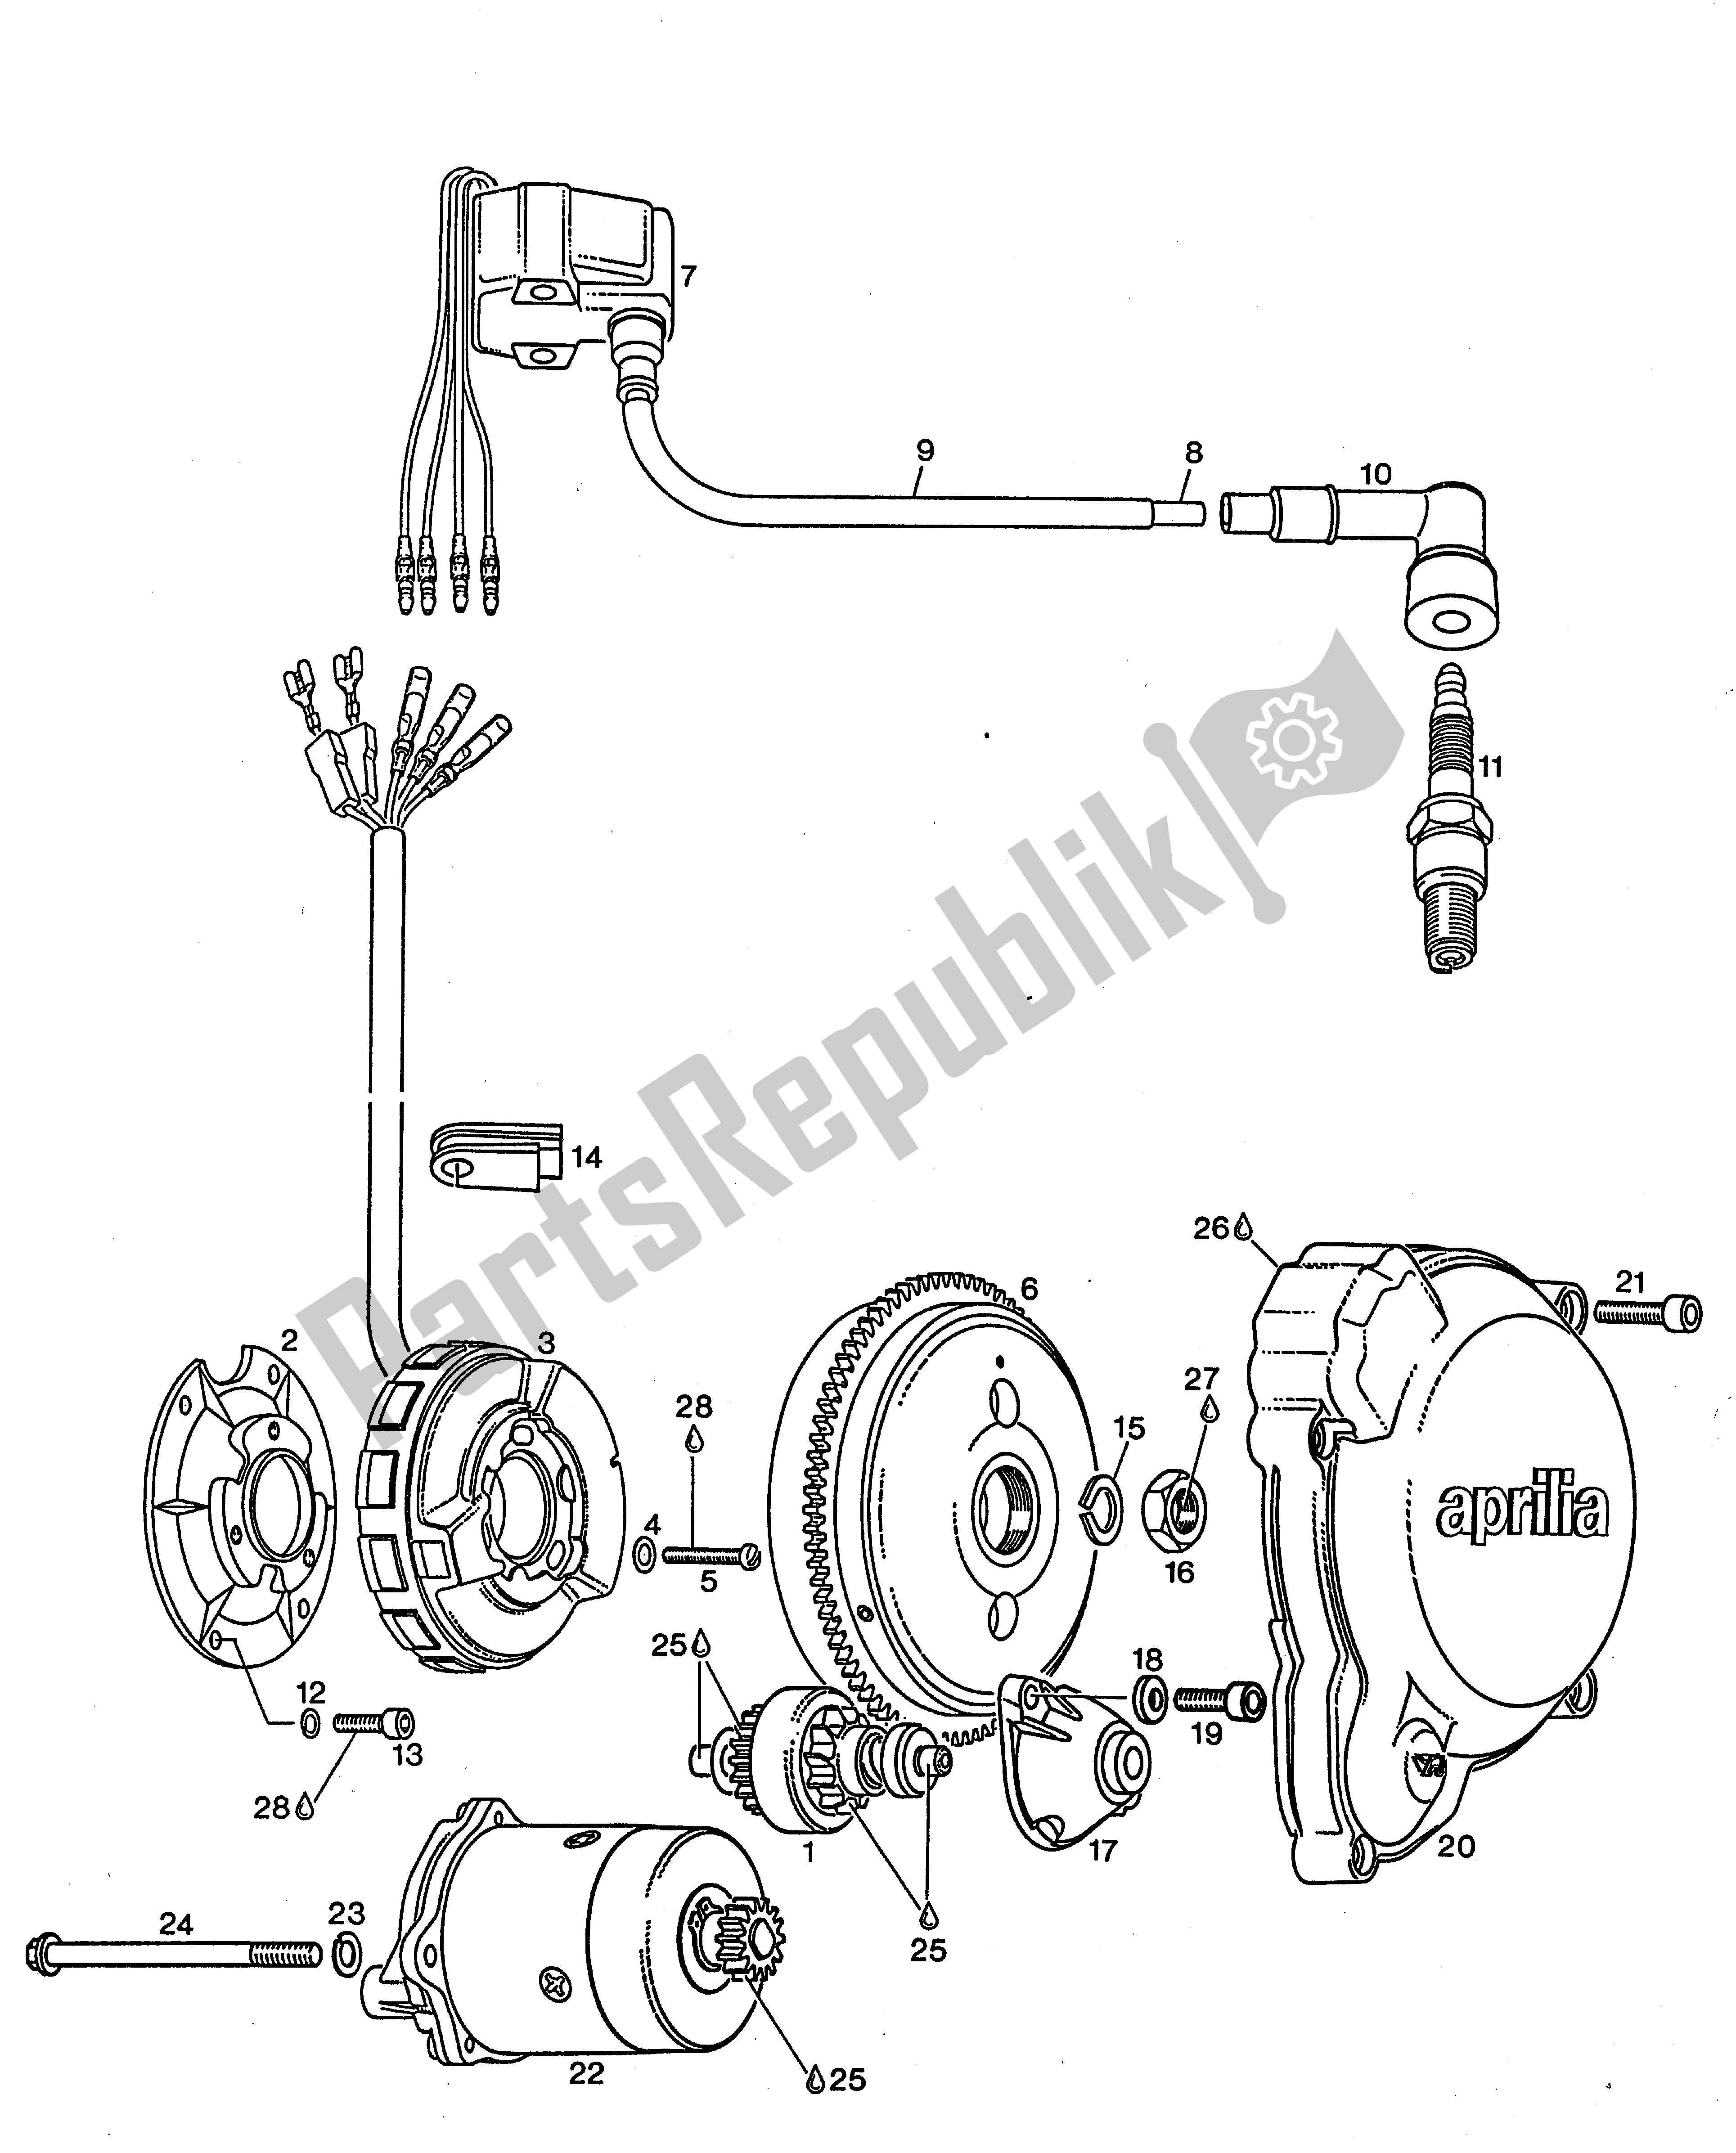 Toutes les pièces pour le Générateur Semi-magnéto, Démarreur électrique, Capot D'allumage du Aprilia Rotax 123 125 1990 - 2000